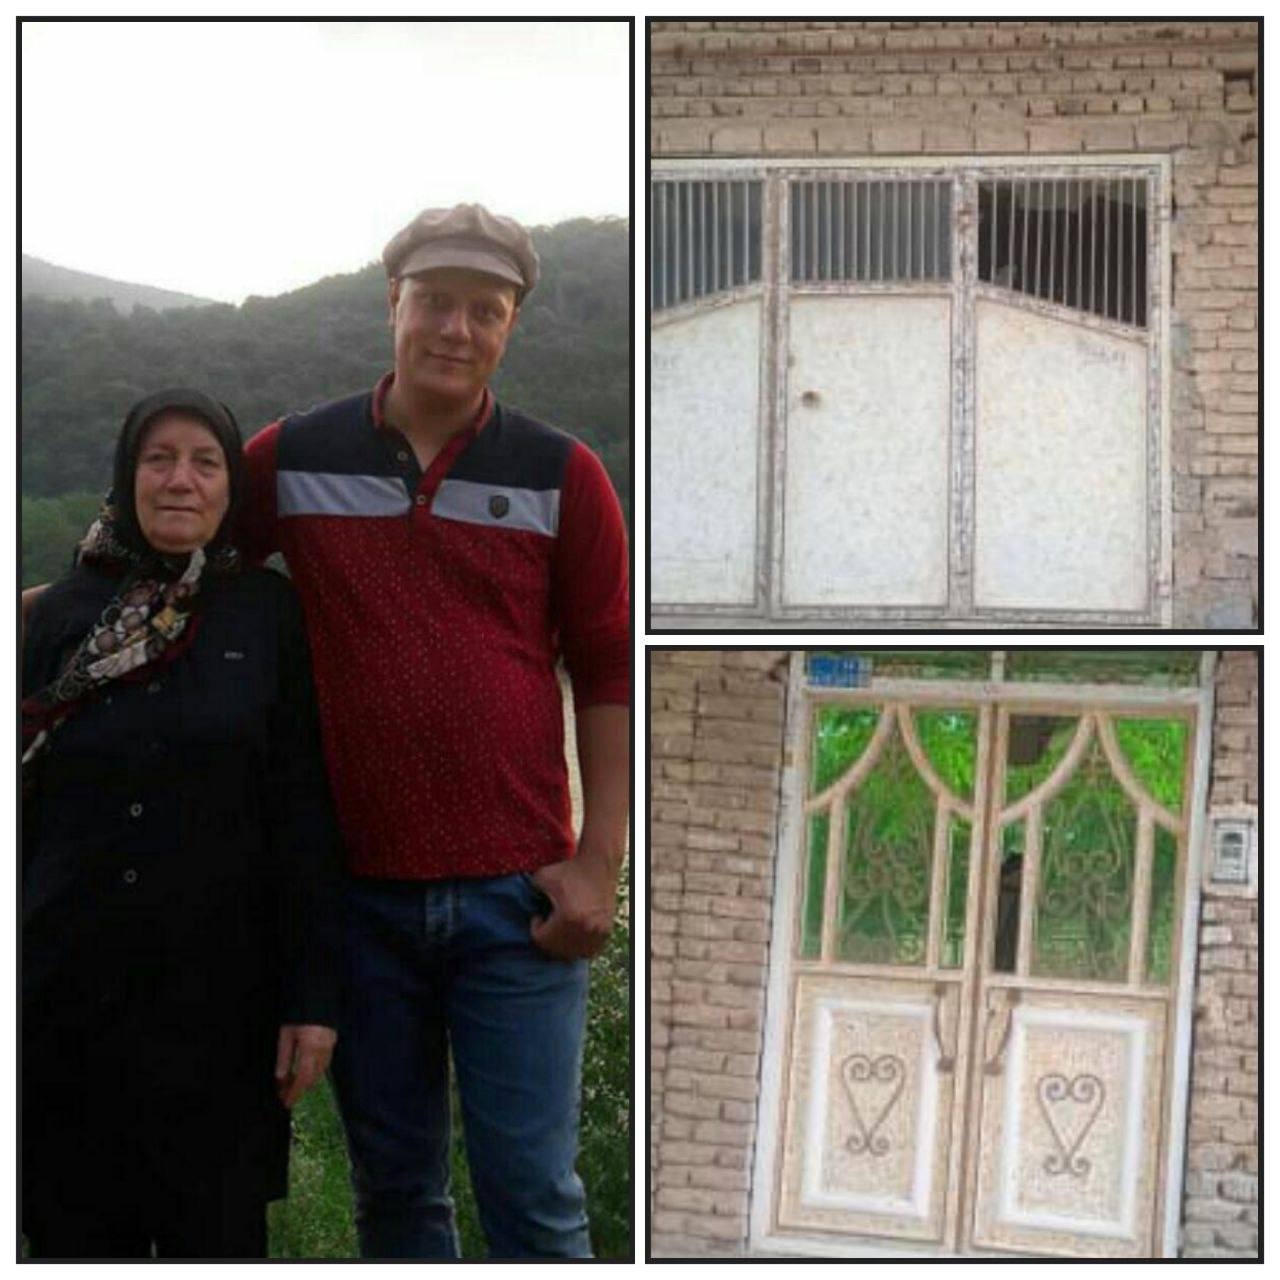 مامورین امنیتی  پس از شکسن شیشه های منزل؛ فرنگیس فتحی و اکرم کوخیان در شهر ملکان را بازداشت کرده اند